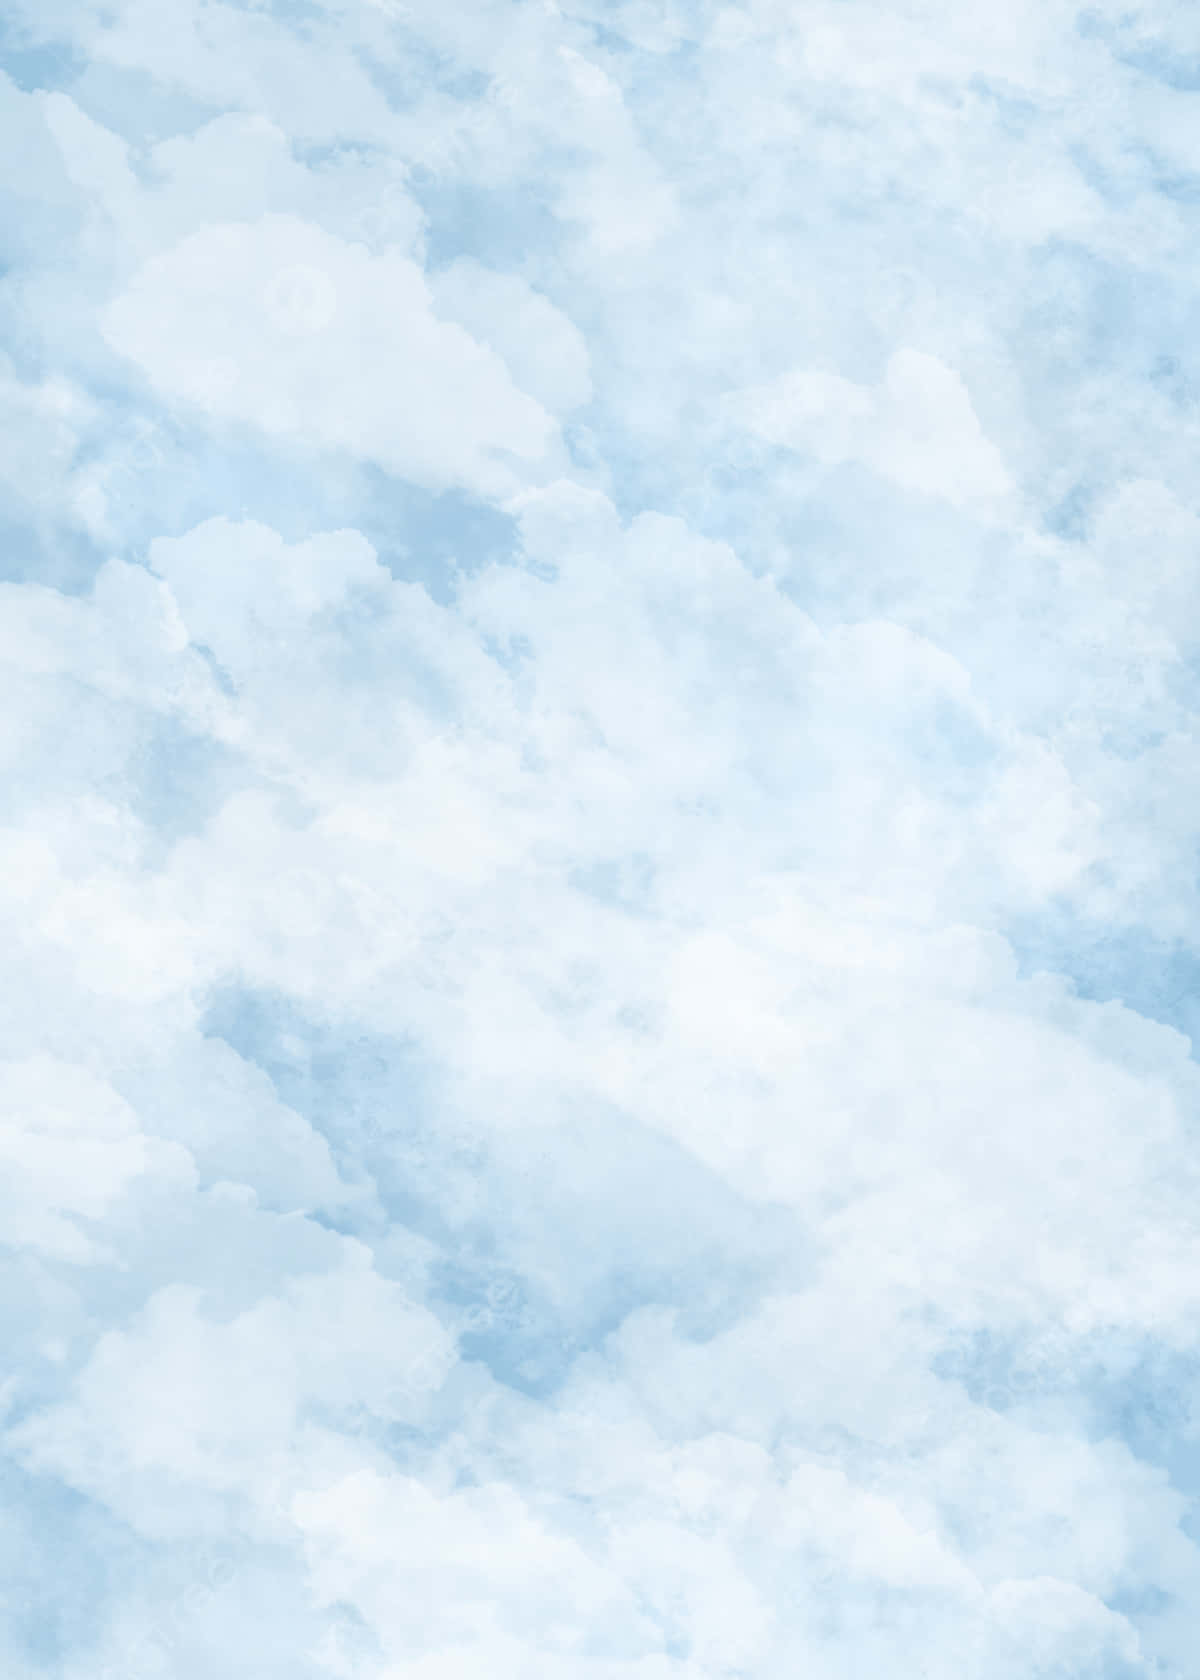 Azulbebê Estética De Nuvem Padrão Mármore Em Azul Claro. Papel de Parede